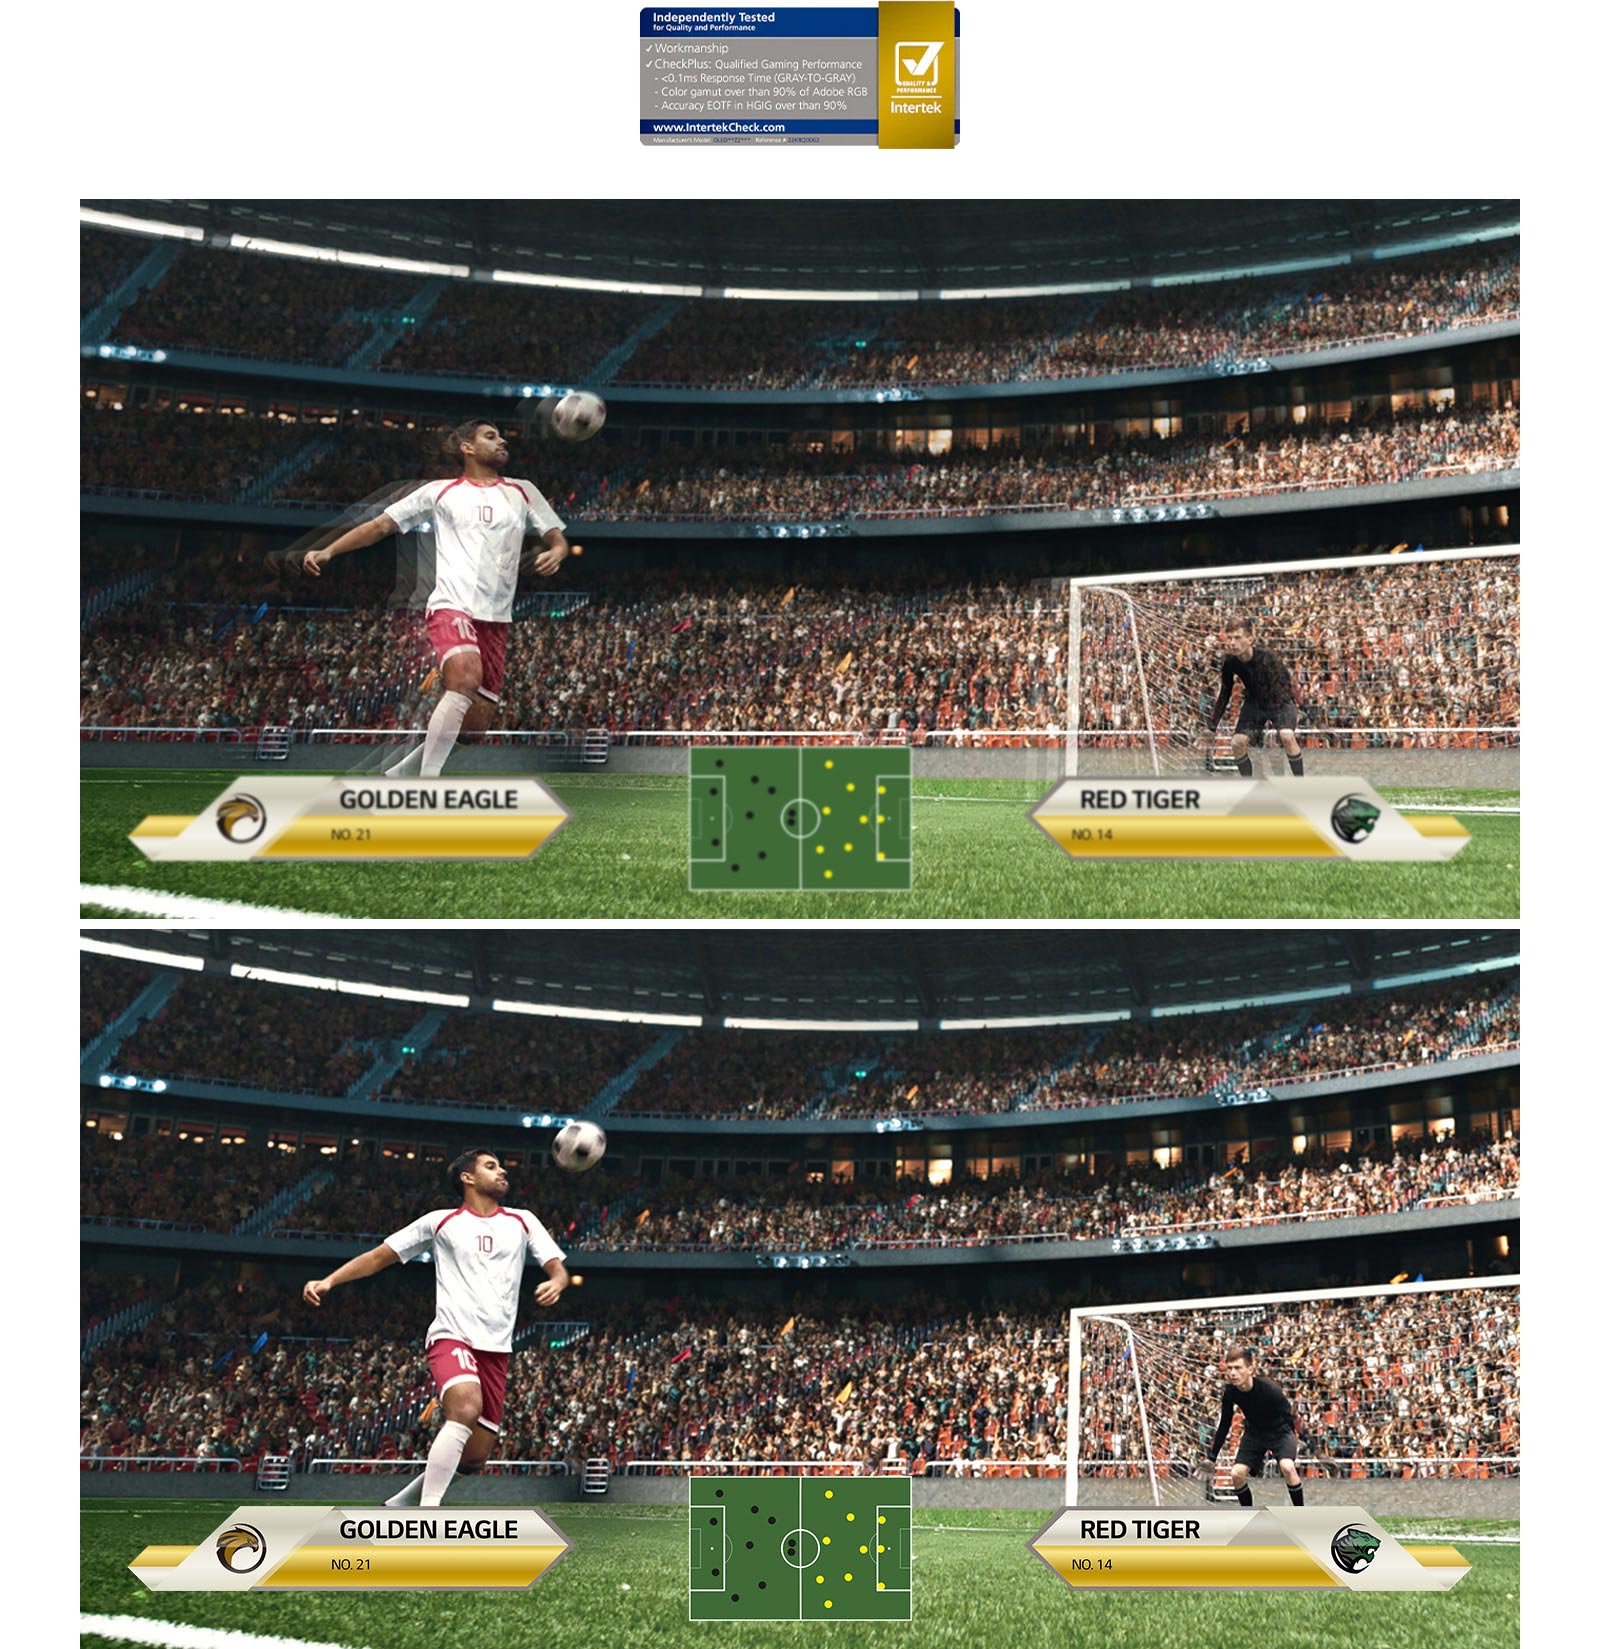 בתצוגה רגילה ובתצוגה של זמן תגובה מהיר מוצגת תמונה זהה של שחקן כדורגל. התצוגה עם זמן התגובה המהיר של 0.1 מילישנייה חלקה ומציאותית יותר באופן ניכר.